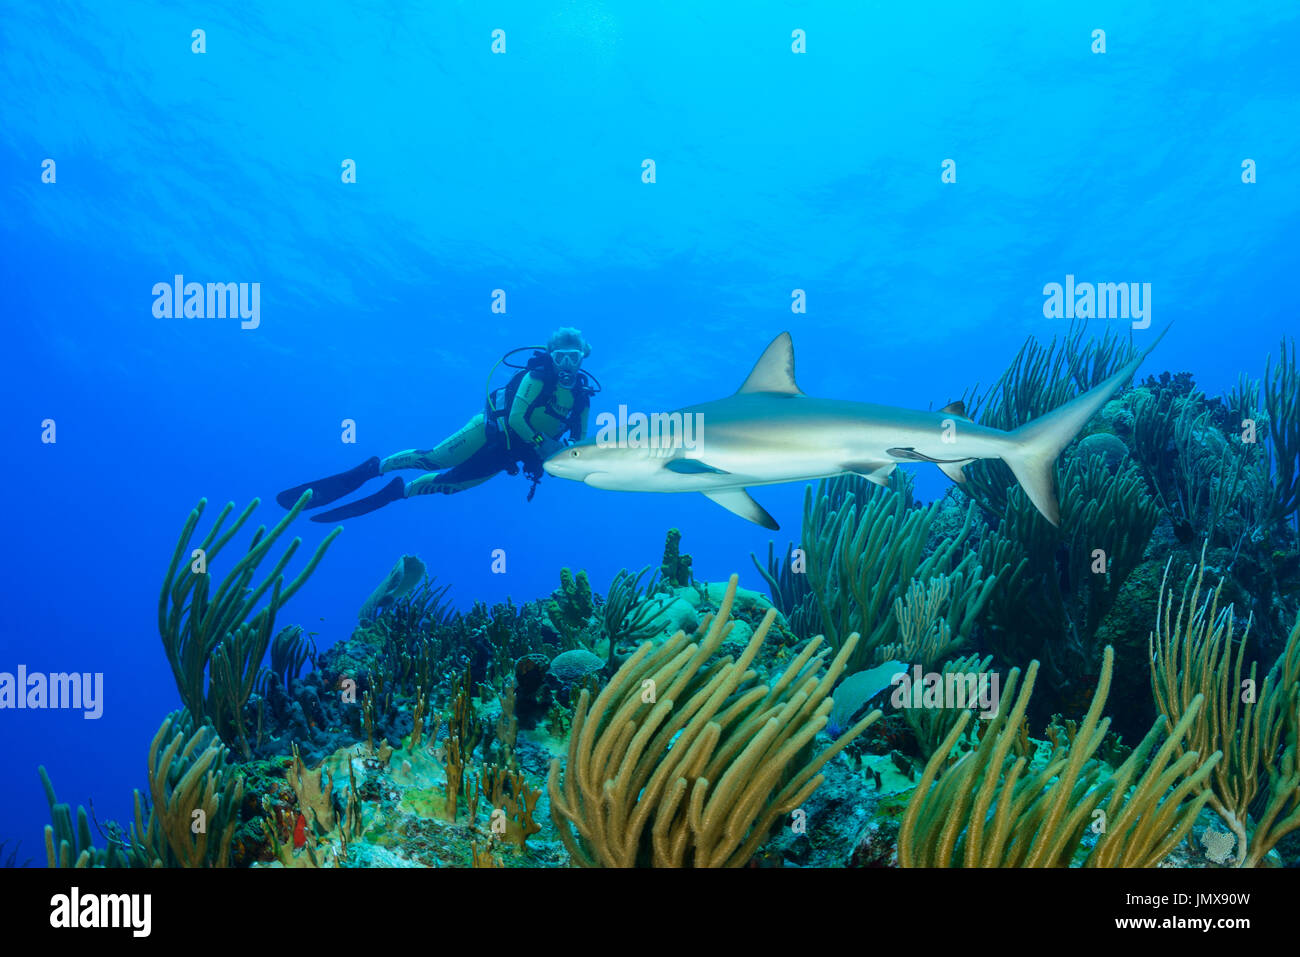 Carcharhinus Perezii, Karibische Riffhaie im Korallenriff und Scuba Diver, Cooper Island, Britische Jungferninseln, Karibik Stockfoto